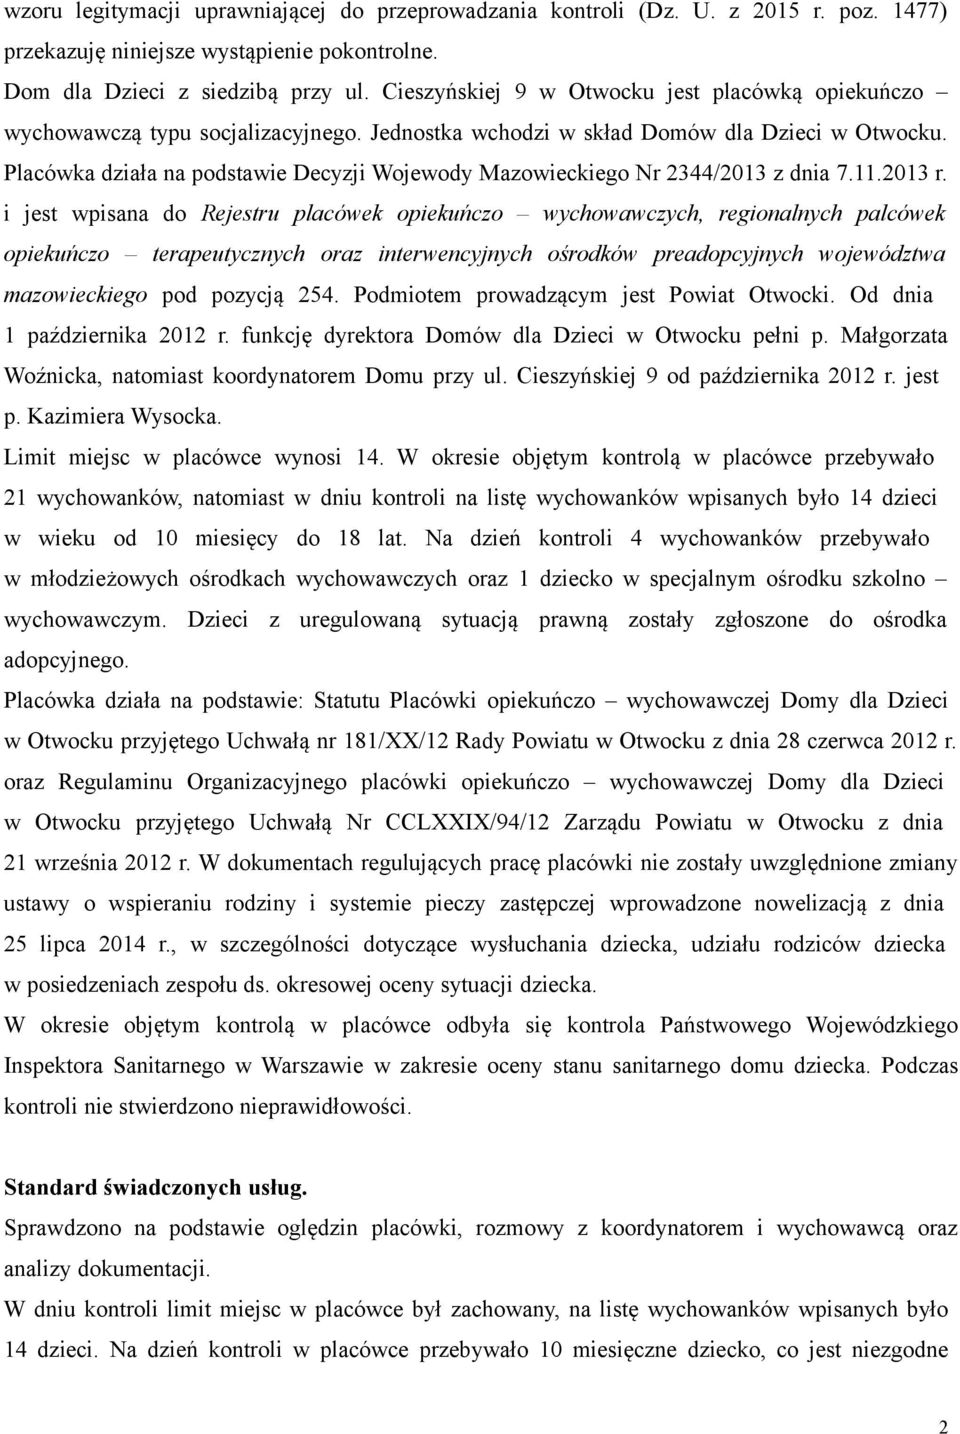 Placówka działa na podstawie Decyzji Wojewody Mazowieckiego Nr 2344/2013 z dnia 7.11.2013 r.